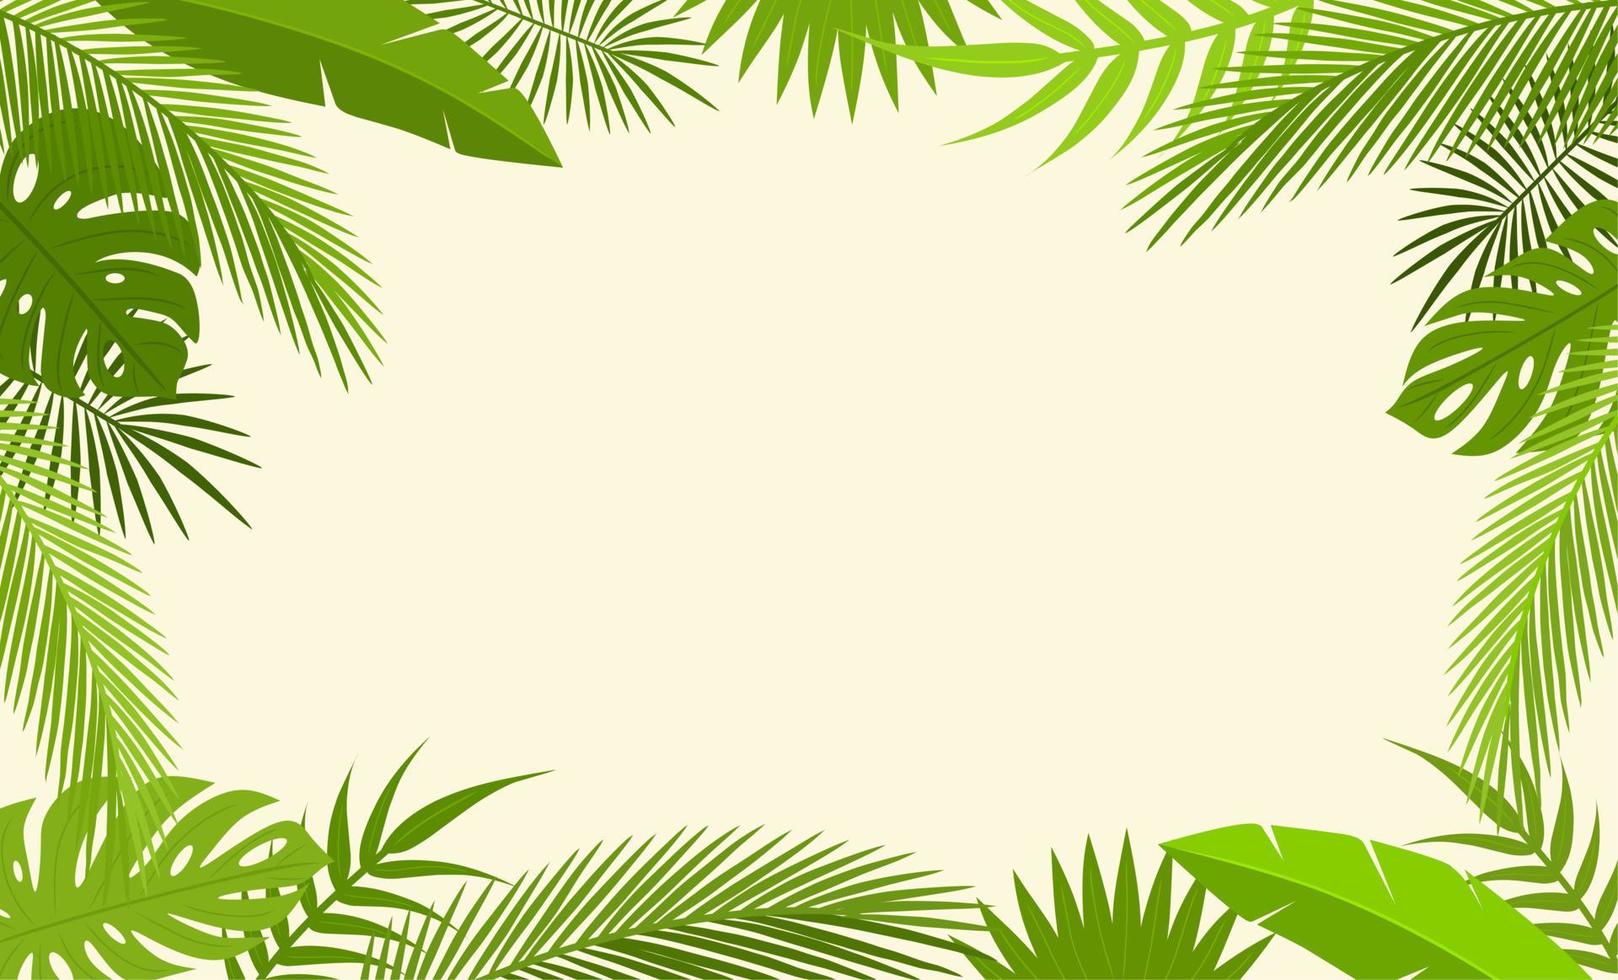 diseño vectorial de fondo de hojas tropicales. ilustración plana de hojas de verano. banner simple con espacio de copia vector